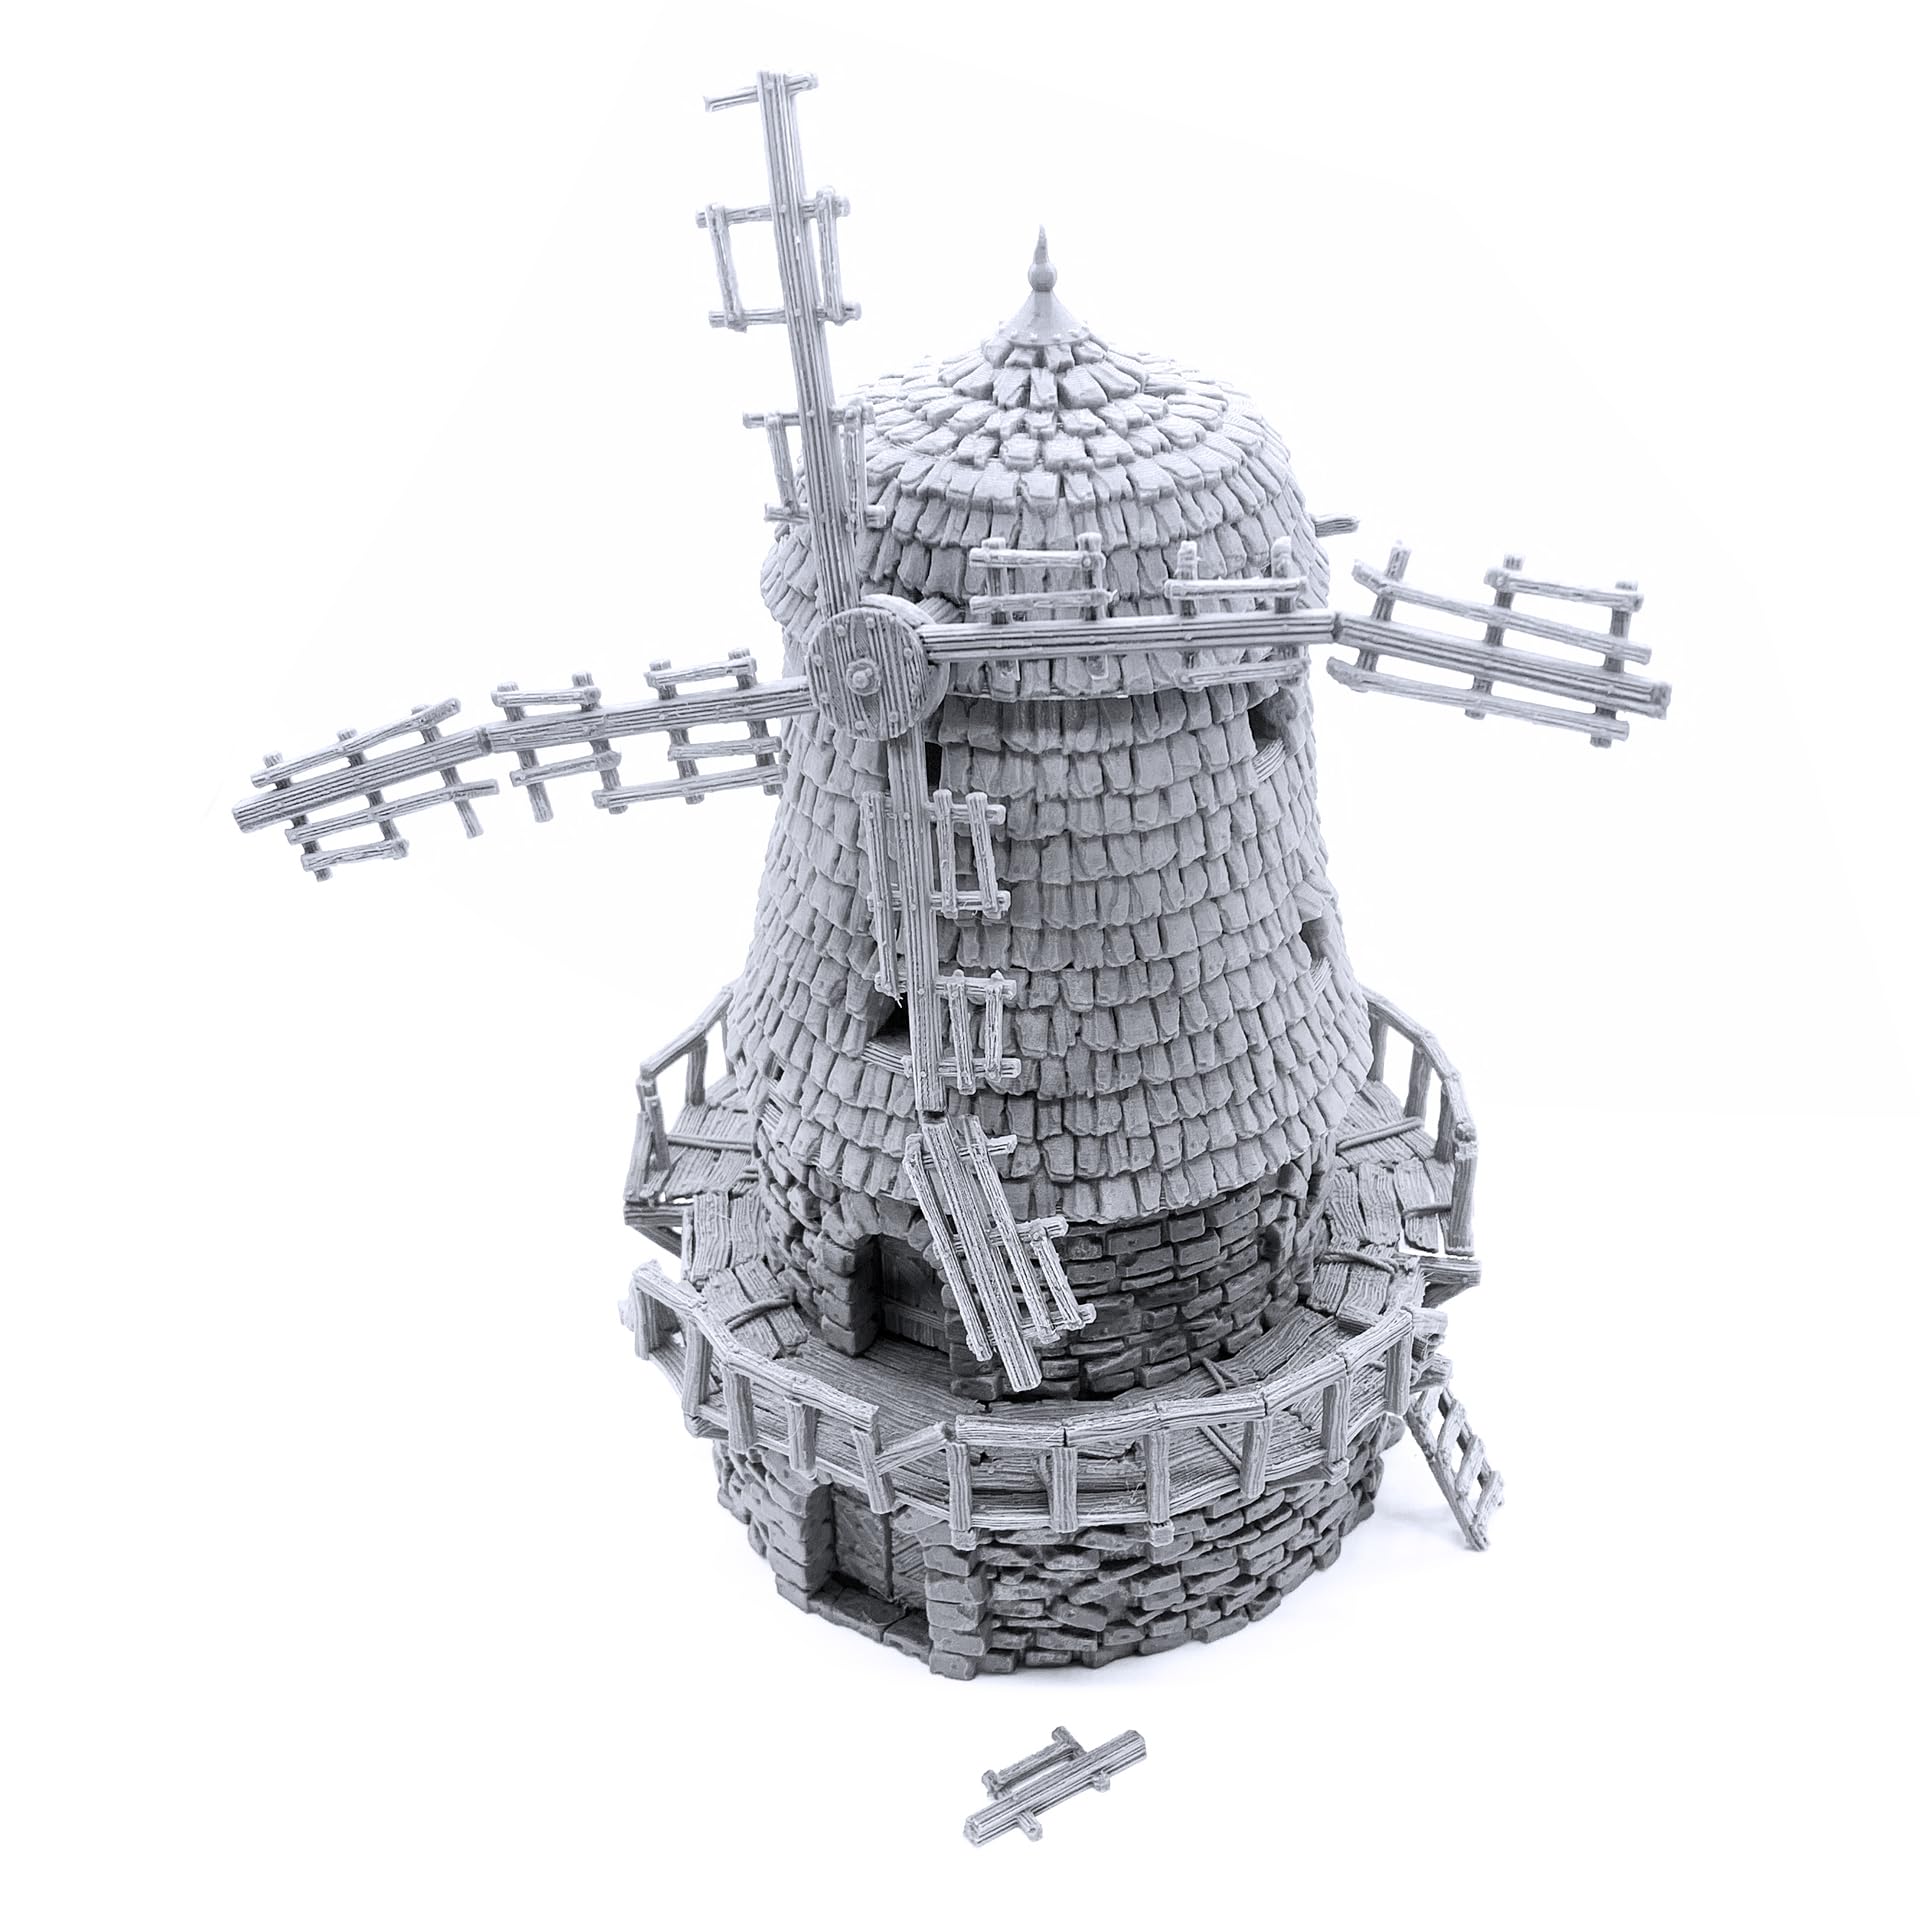 Haunted Windmill DND Terrain Dungeons and Dragons対応 ウォーハンマー 40k 28mm ミニチュア ウォーゲーム